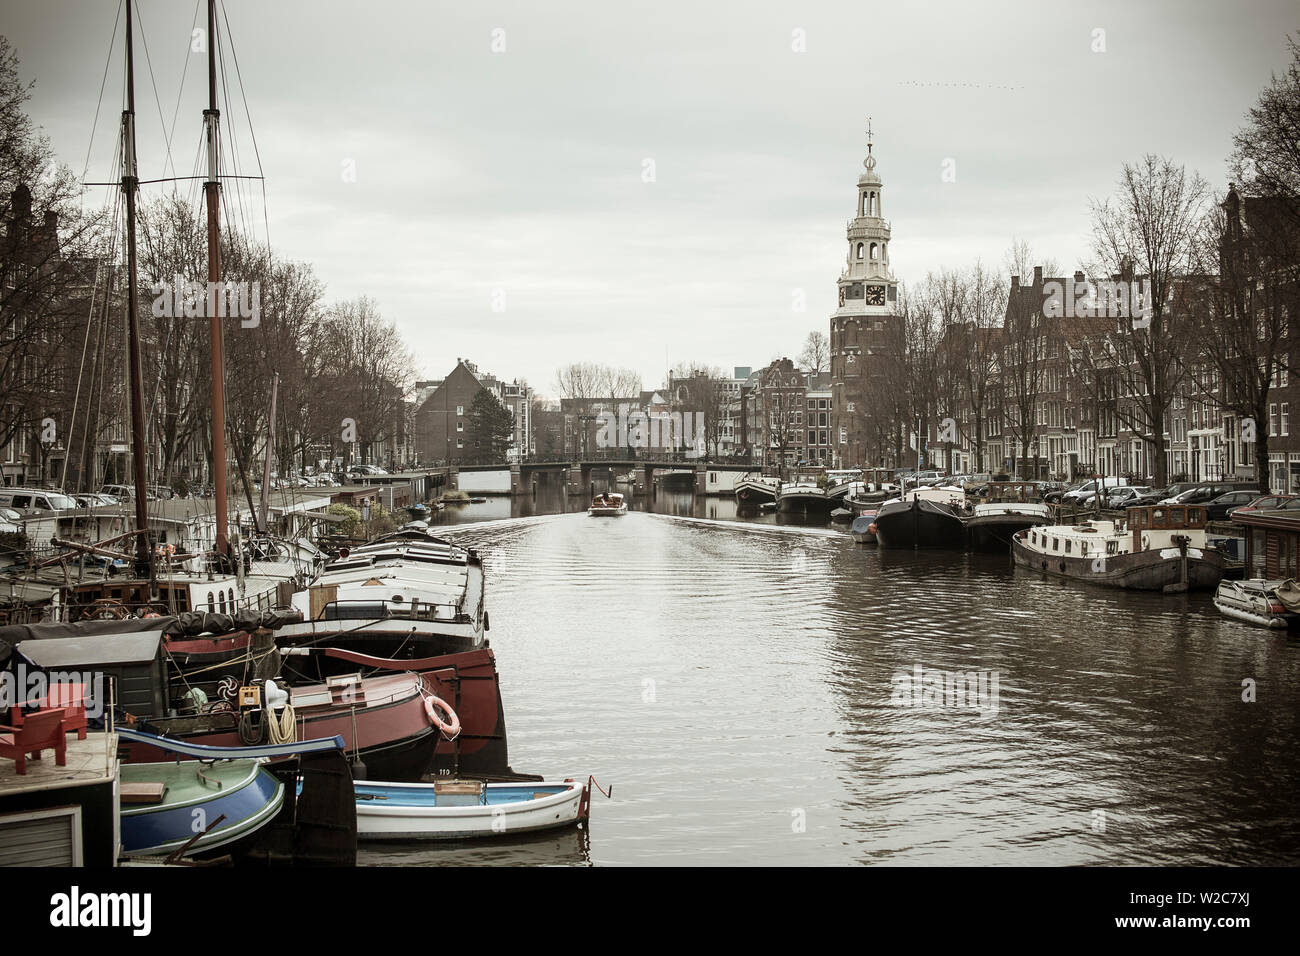 Montelbaanstoren tower, Oudeschans canal, Amsterdam, Holland Stock Photo